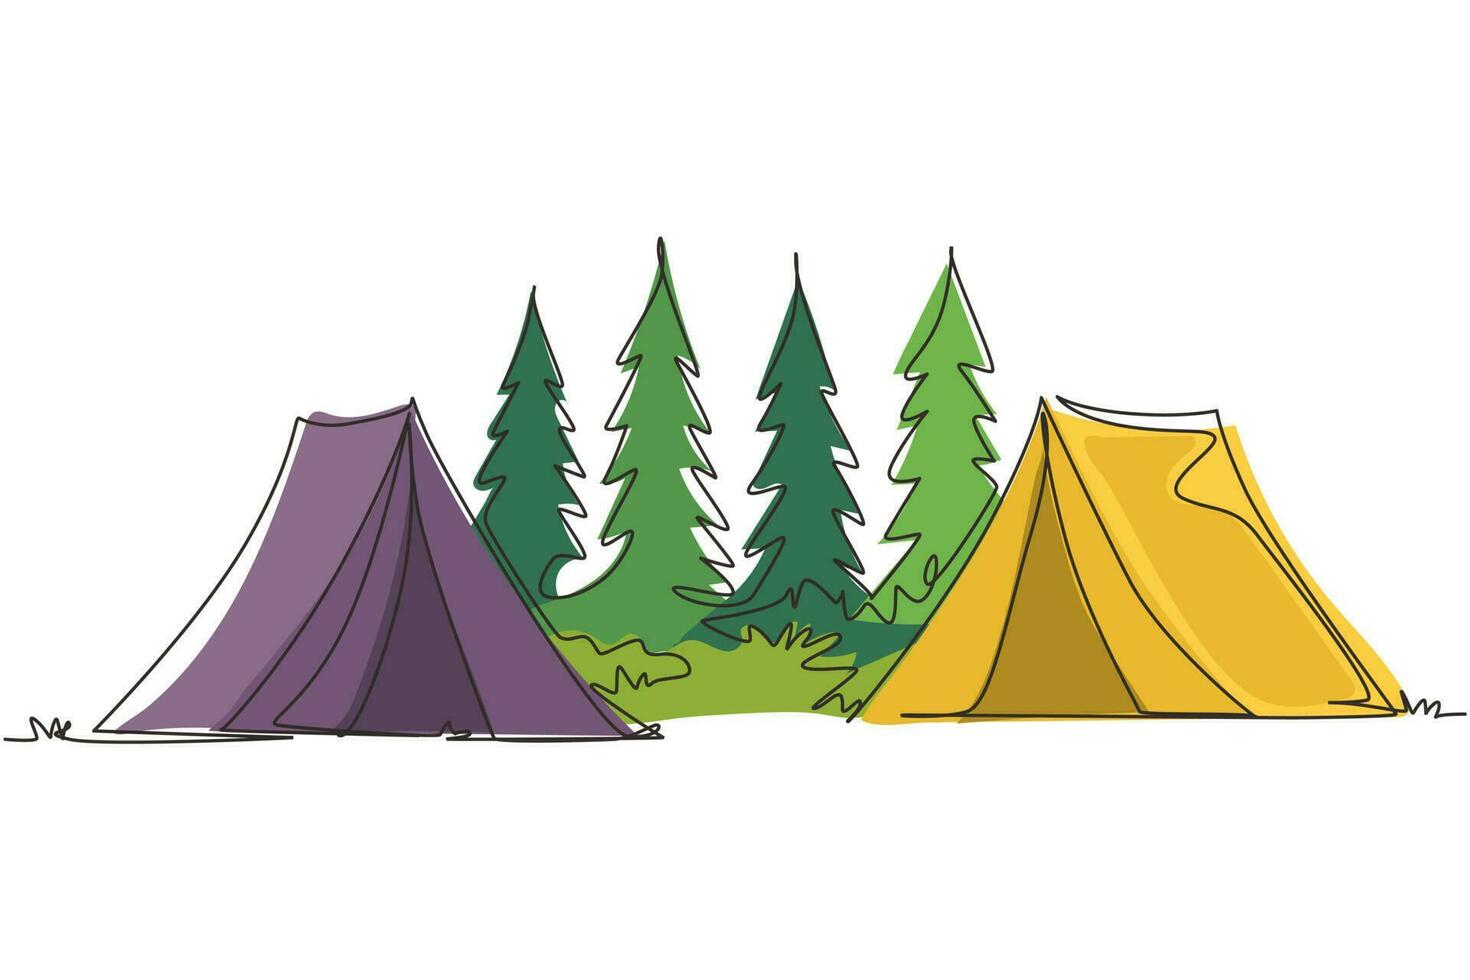 kontinuerlig en rad ritning två tält camping turist tallskog berg expedition. resor, äventyr, natur, expedition och semester koncept. enda rad rita design vektorgrafisk illustration vektor